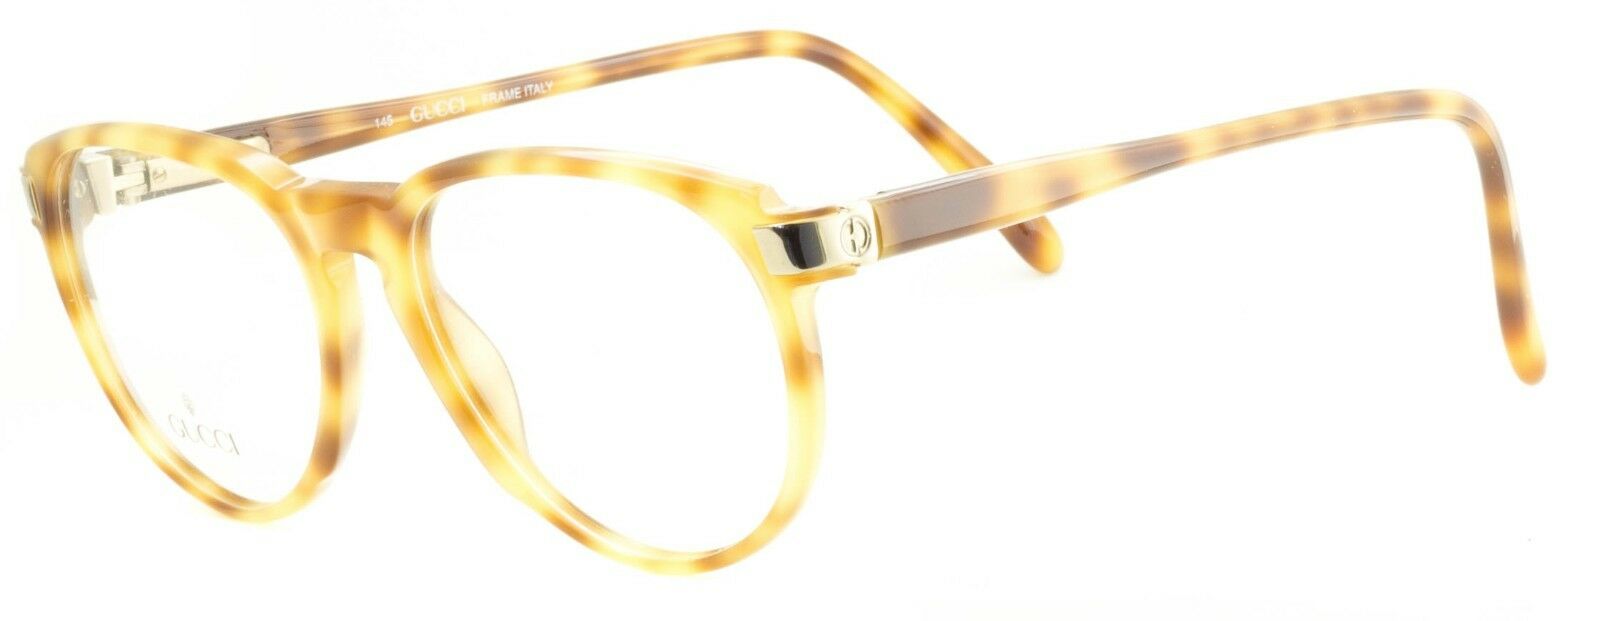 GUCCI GG 1125 C48 Eyewear FRAMES NEW Glasses RX Optical Eyeglasses ITALY - BNIB